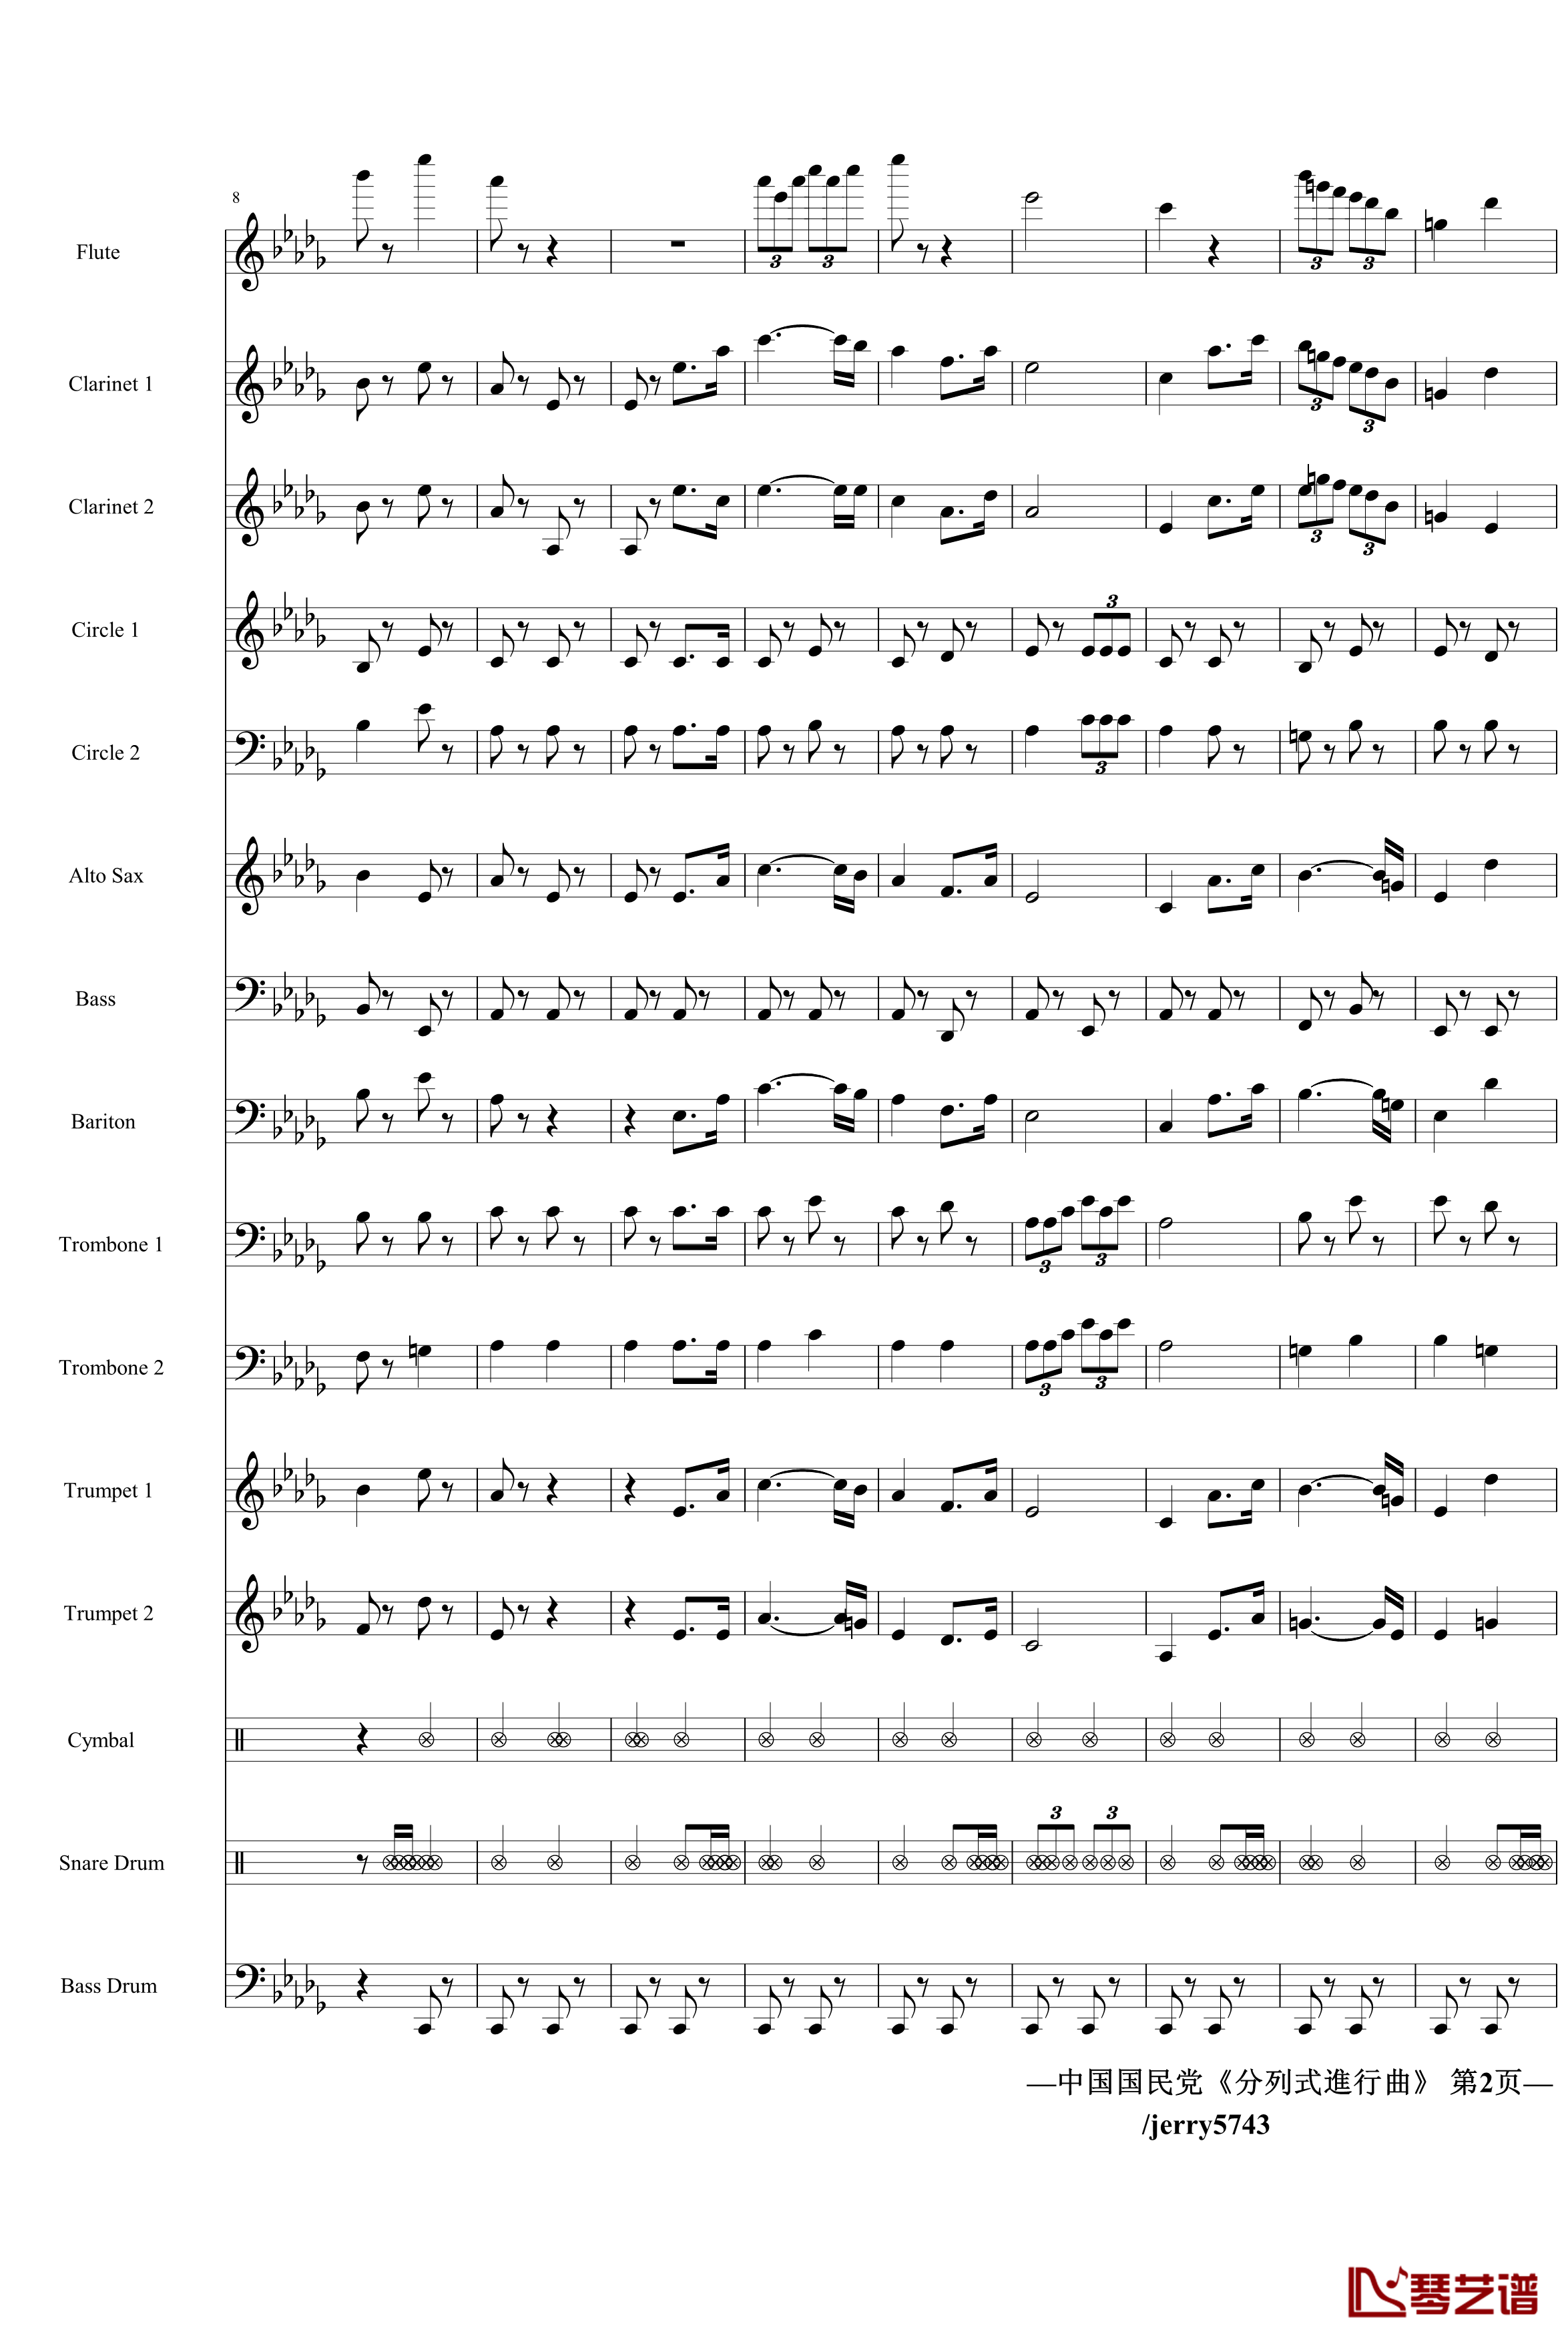 分列式進行曲钢琴谱-jerry5743出品-中国名曲2